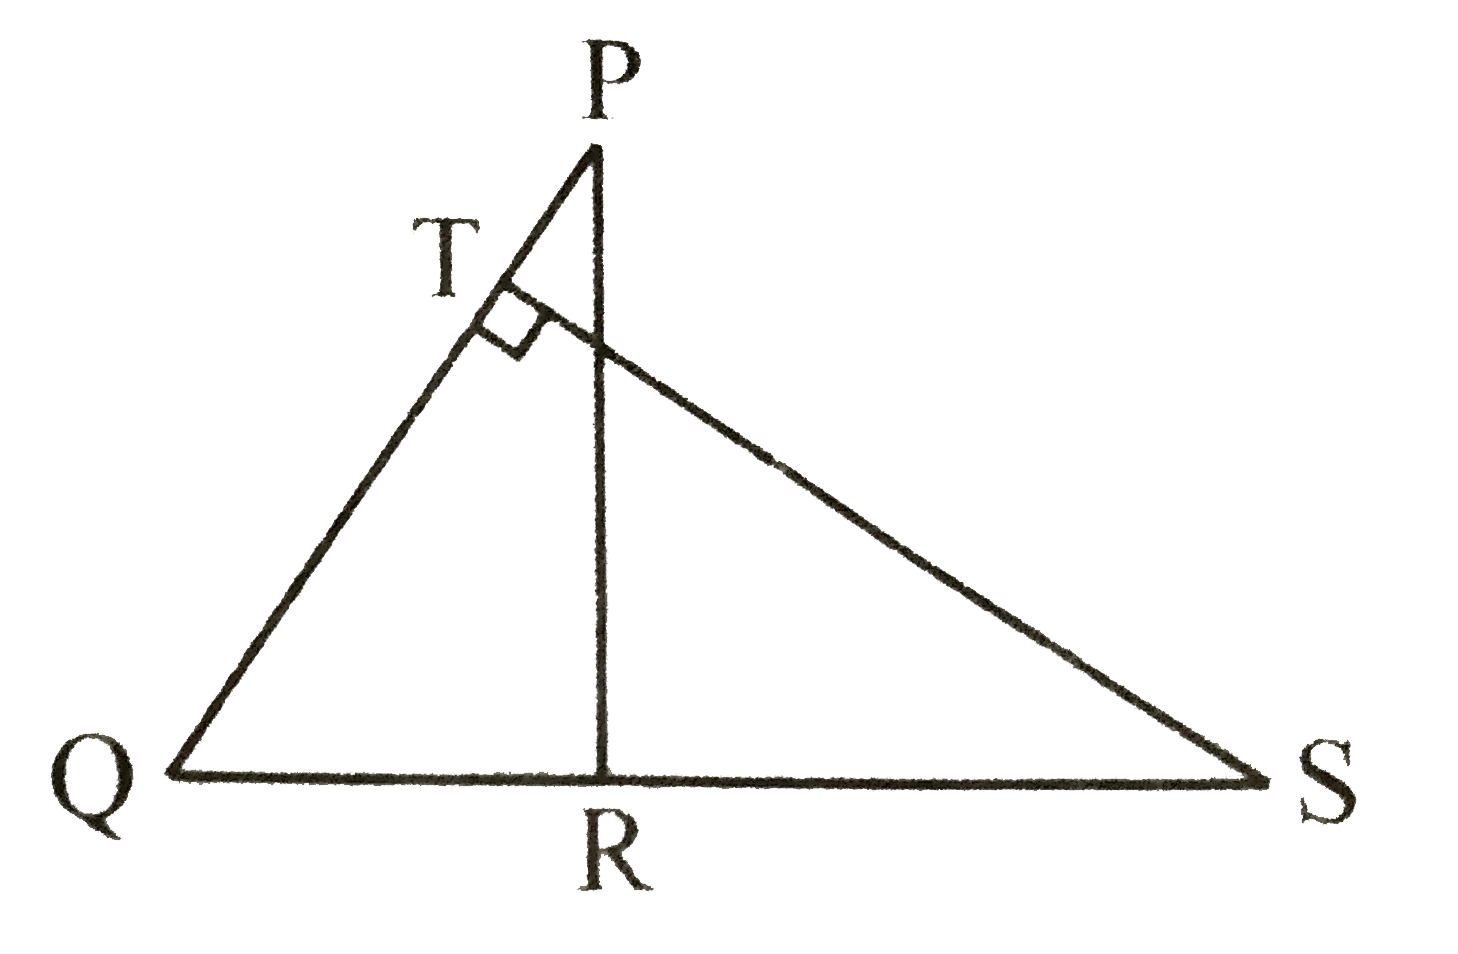 दी गई आकृति (चित्र 7.145) में, PQR तथा QST दो समकोण त्रिभुज है जिनके क्रमशः angleR तथा angleT समकोण है तो सिद्ध कीजिए कि QR xx QS = QP xx QT